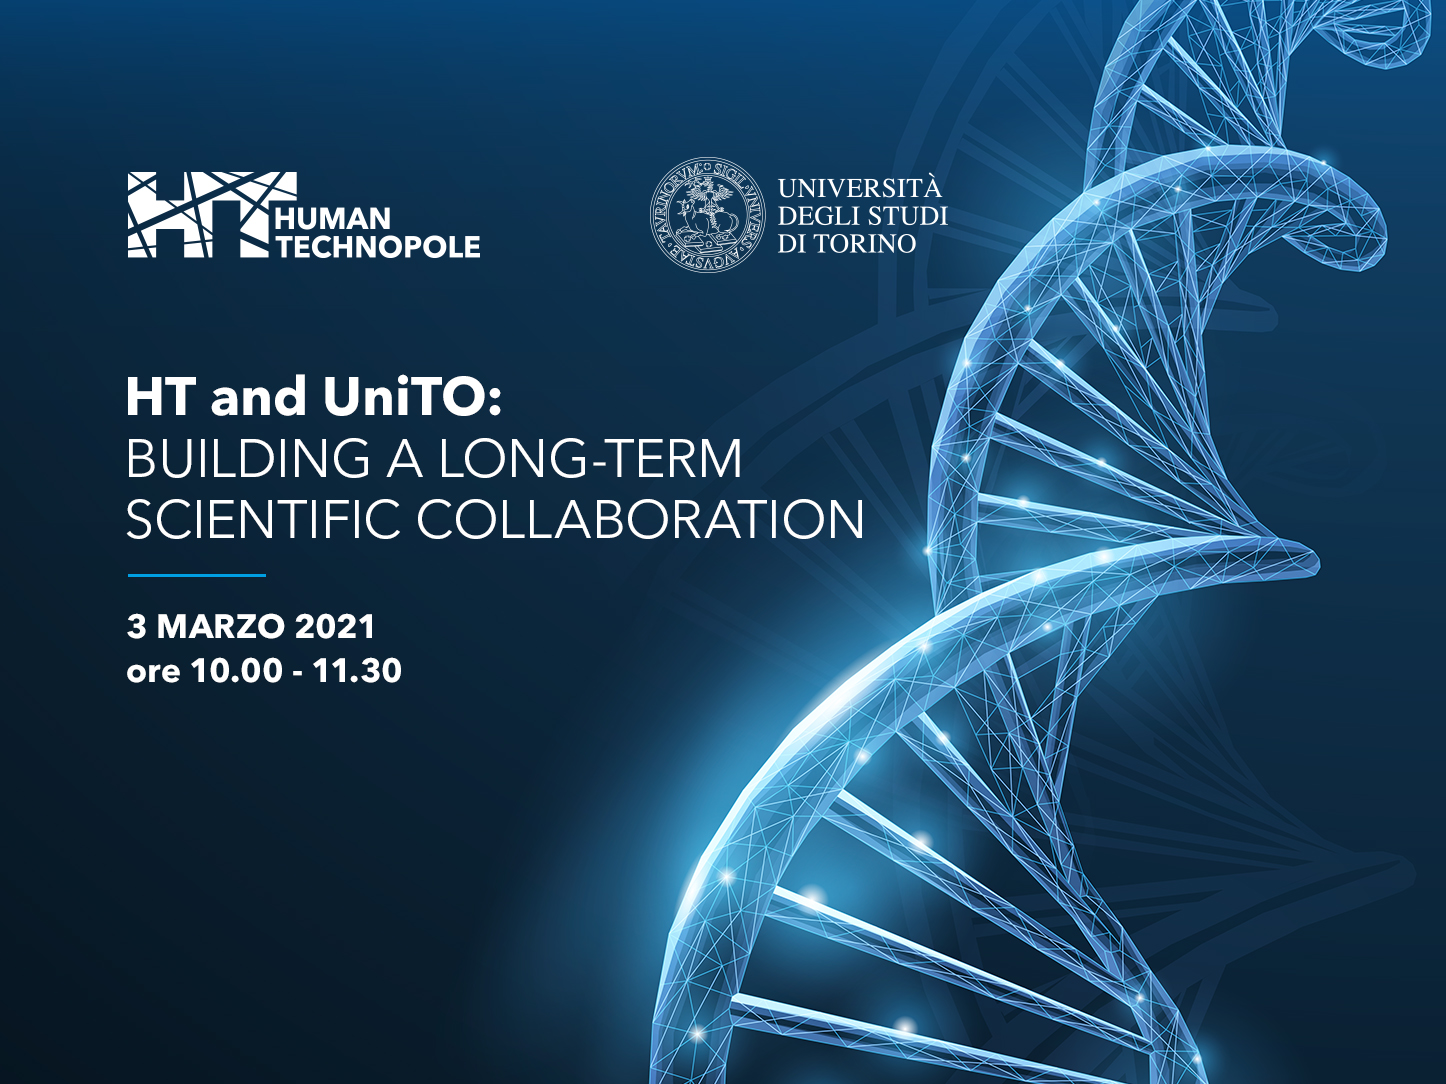 HT & UniTO: collaborazioni scientifiche a lungo termine